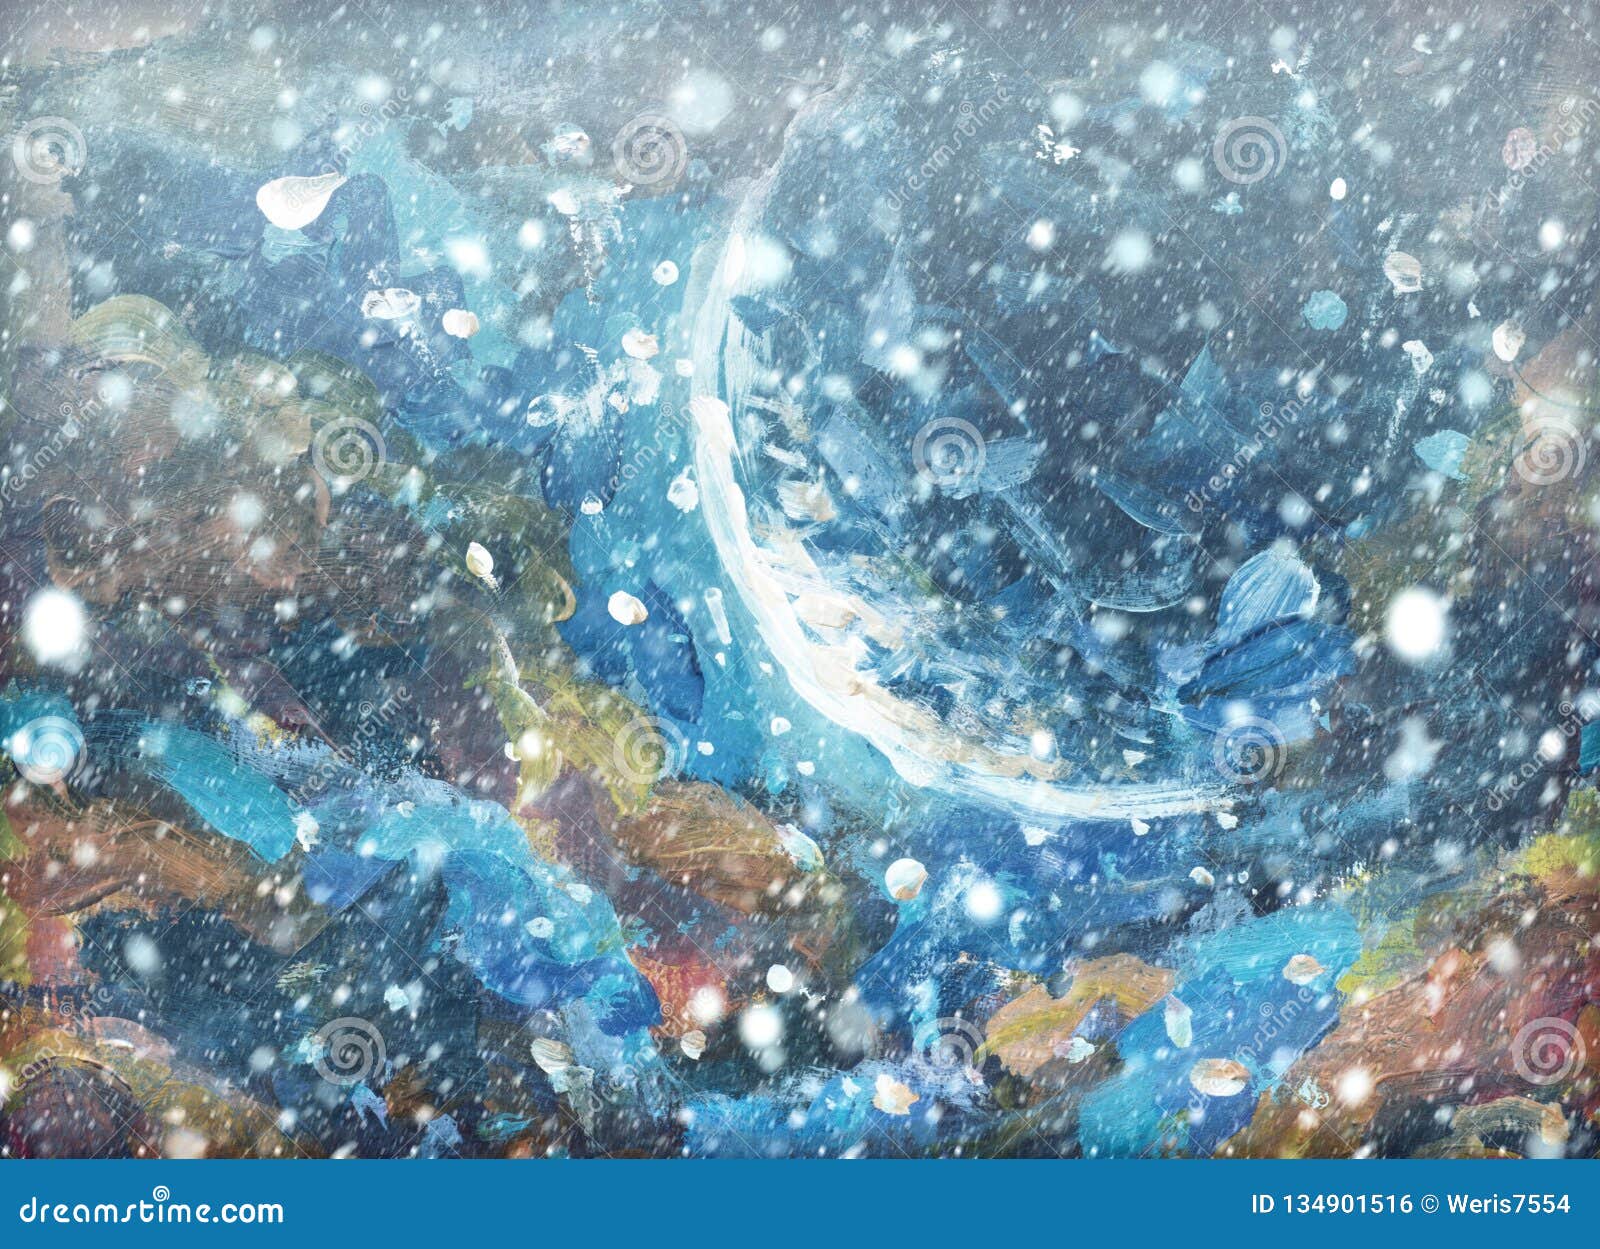 Neige Background Flocons De Neige Brouillés Sur La Peinture à L&#39;huile  Originale - Noël Photo stock - Image du horizontal, neige: 134901516